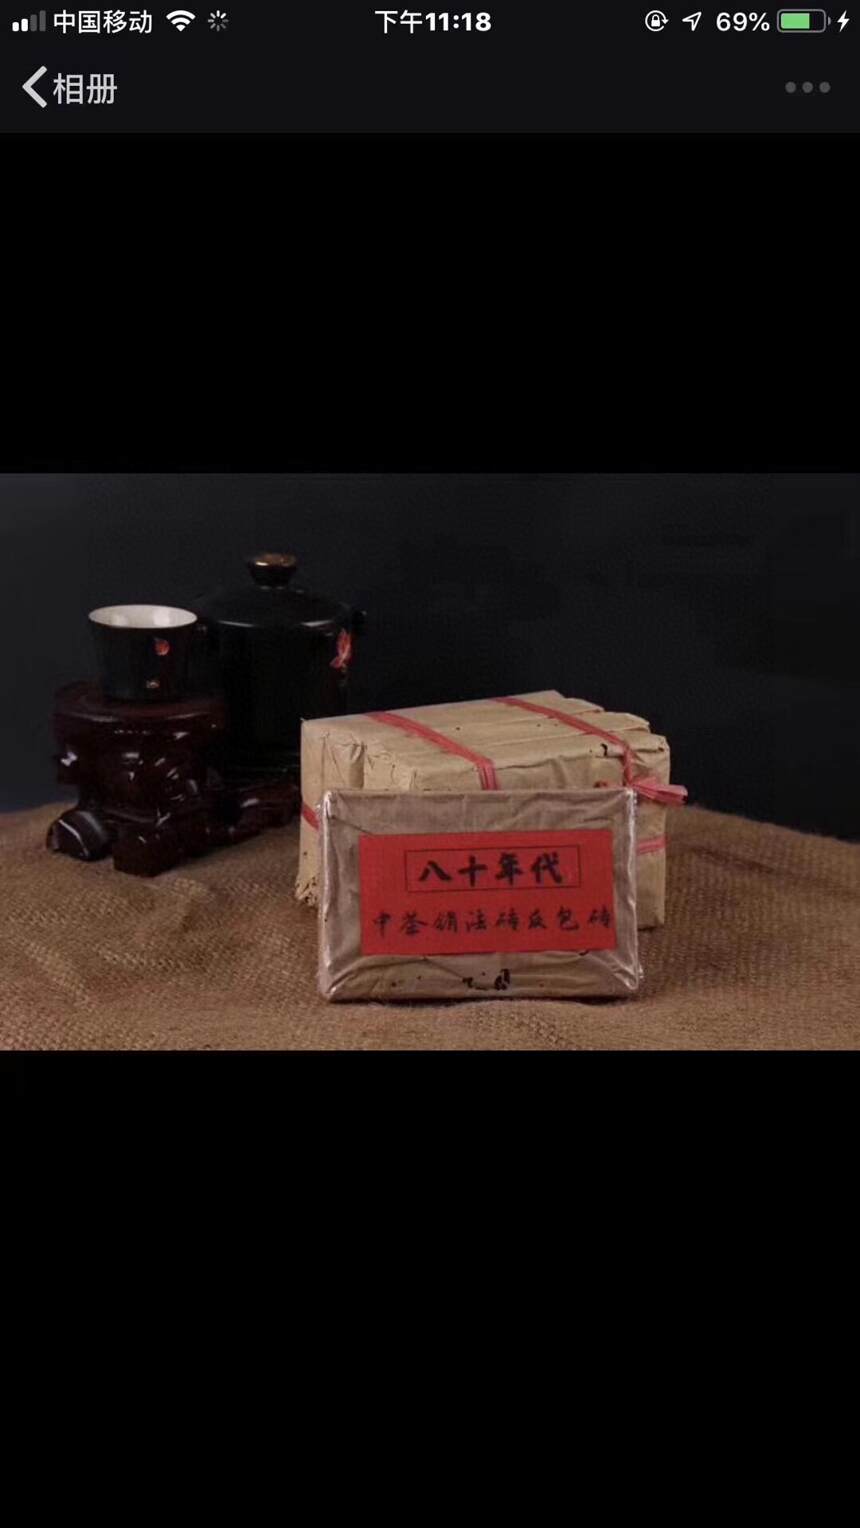 #普洱茶# 80年代#中茶# 销法砖反包紧压高碎生茶